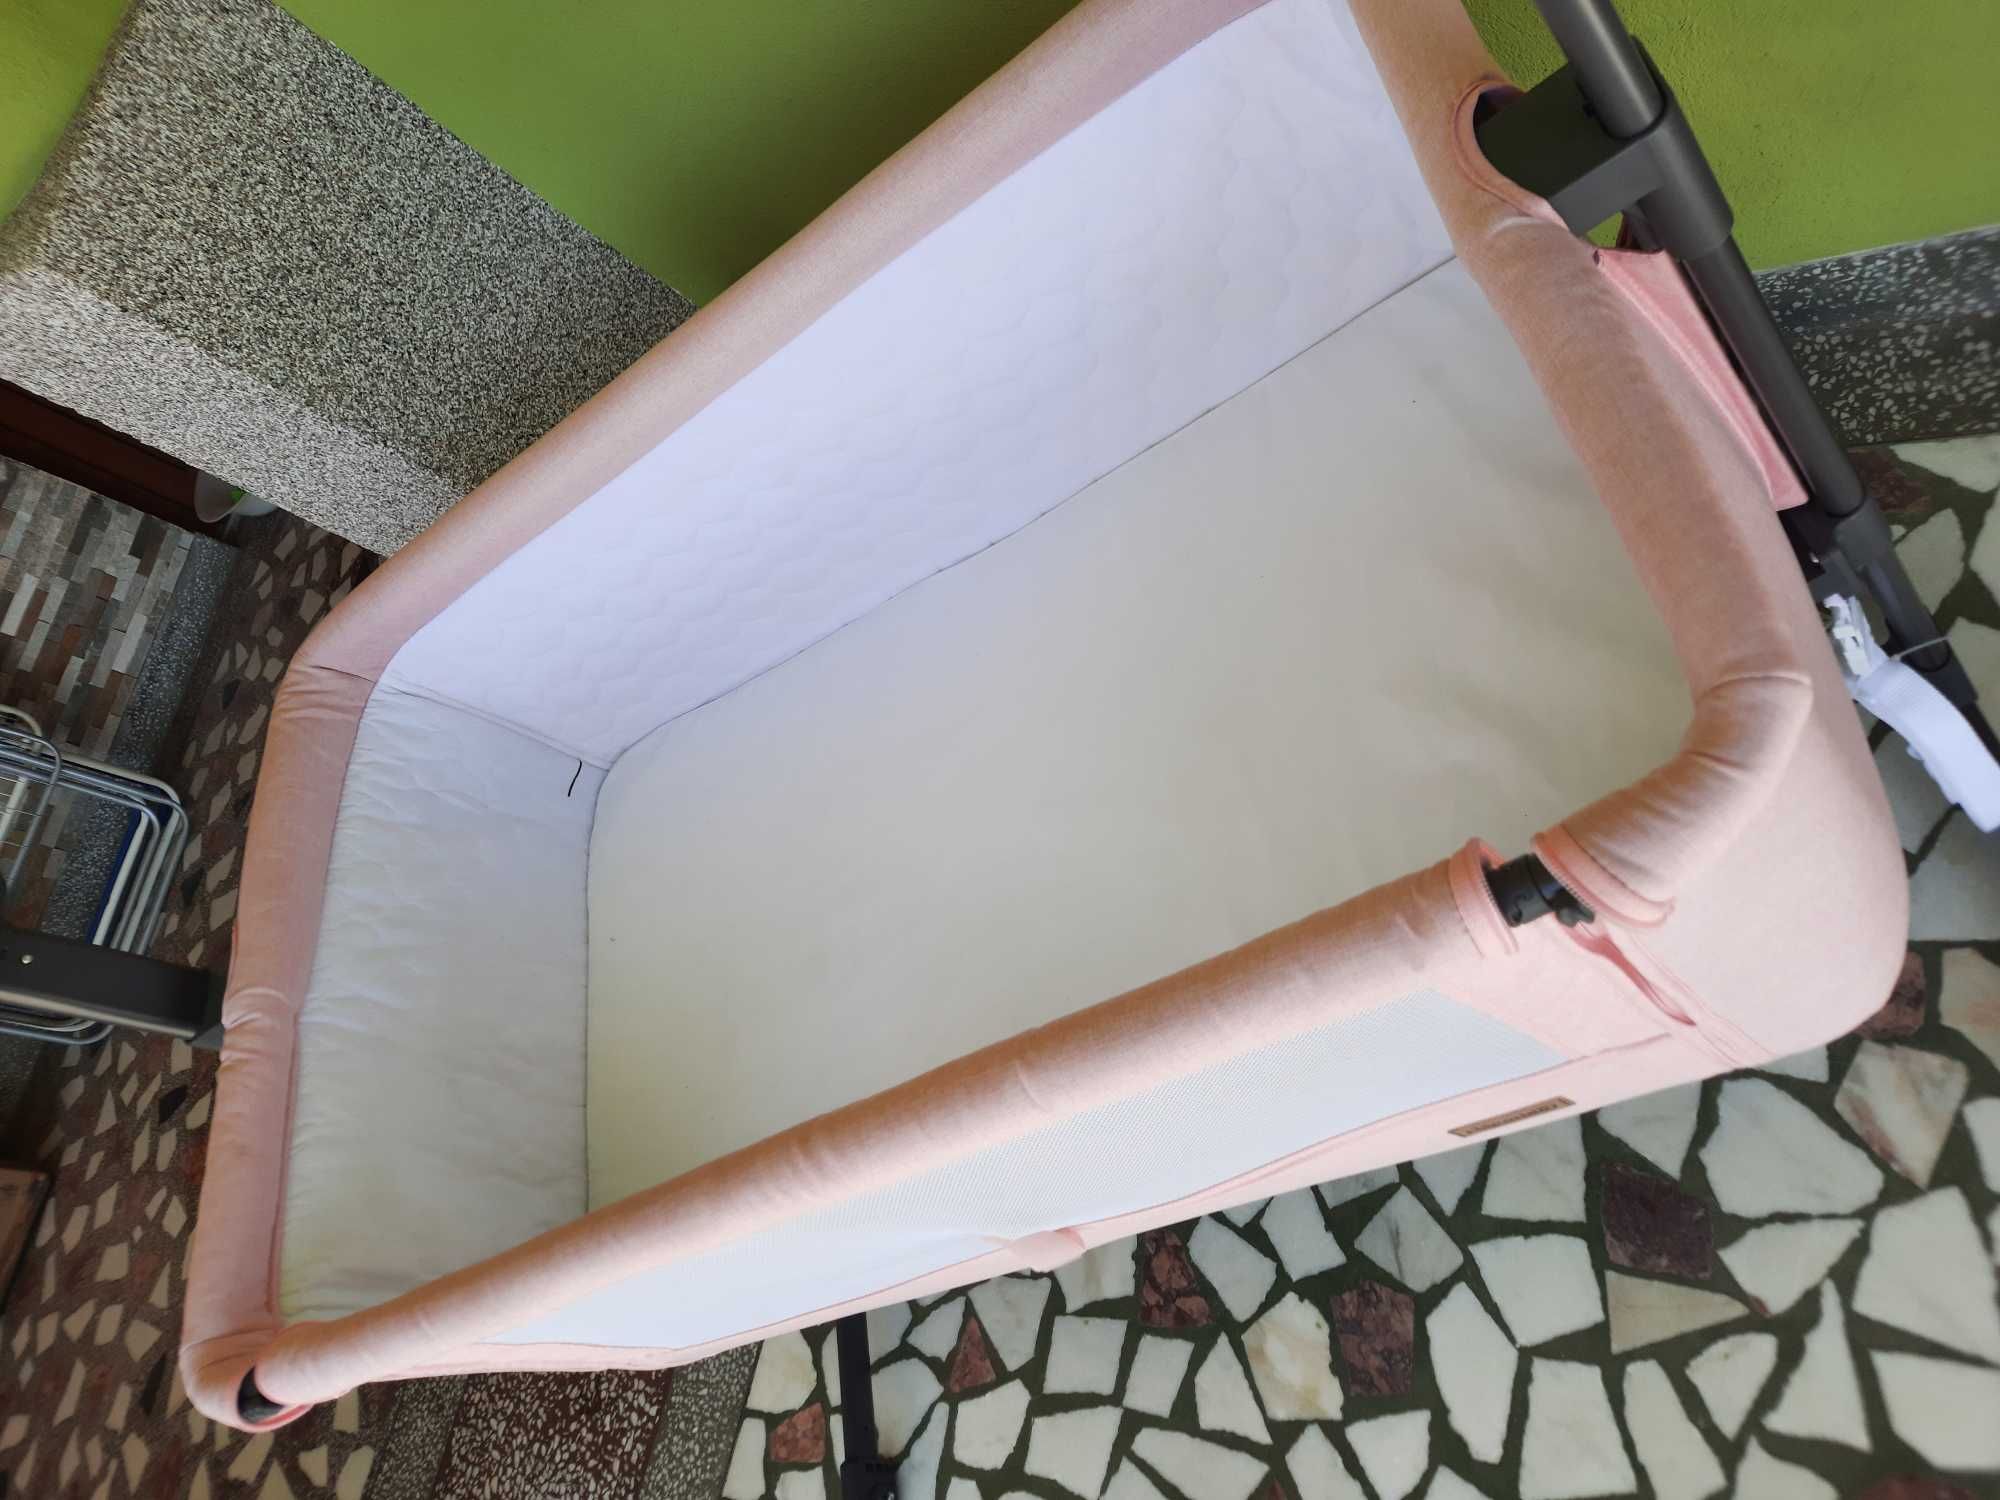 Vând pătuț pentru bebeluși co-sleeper cu sistem de legănare